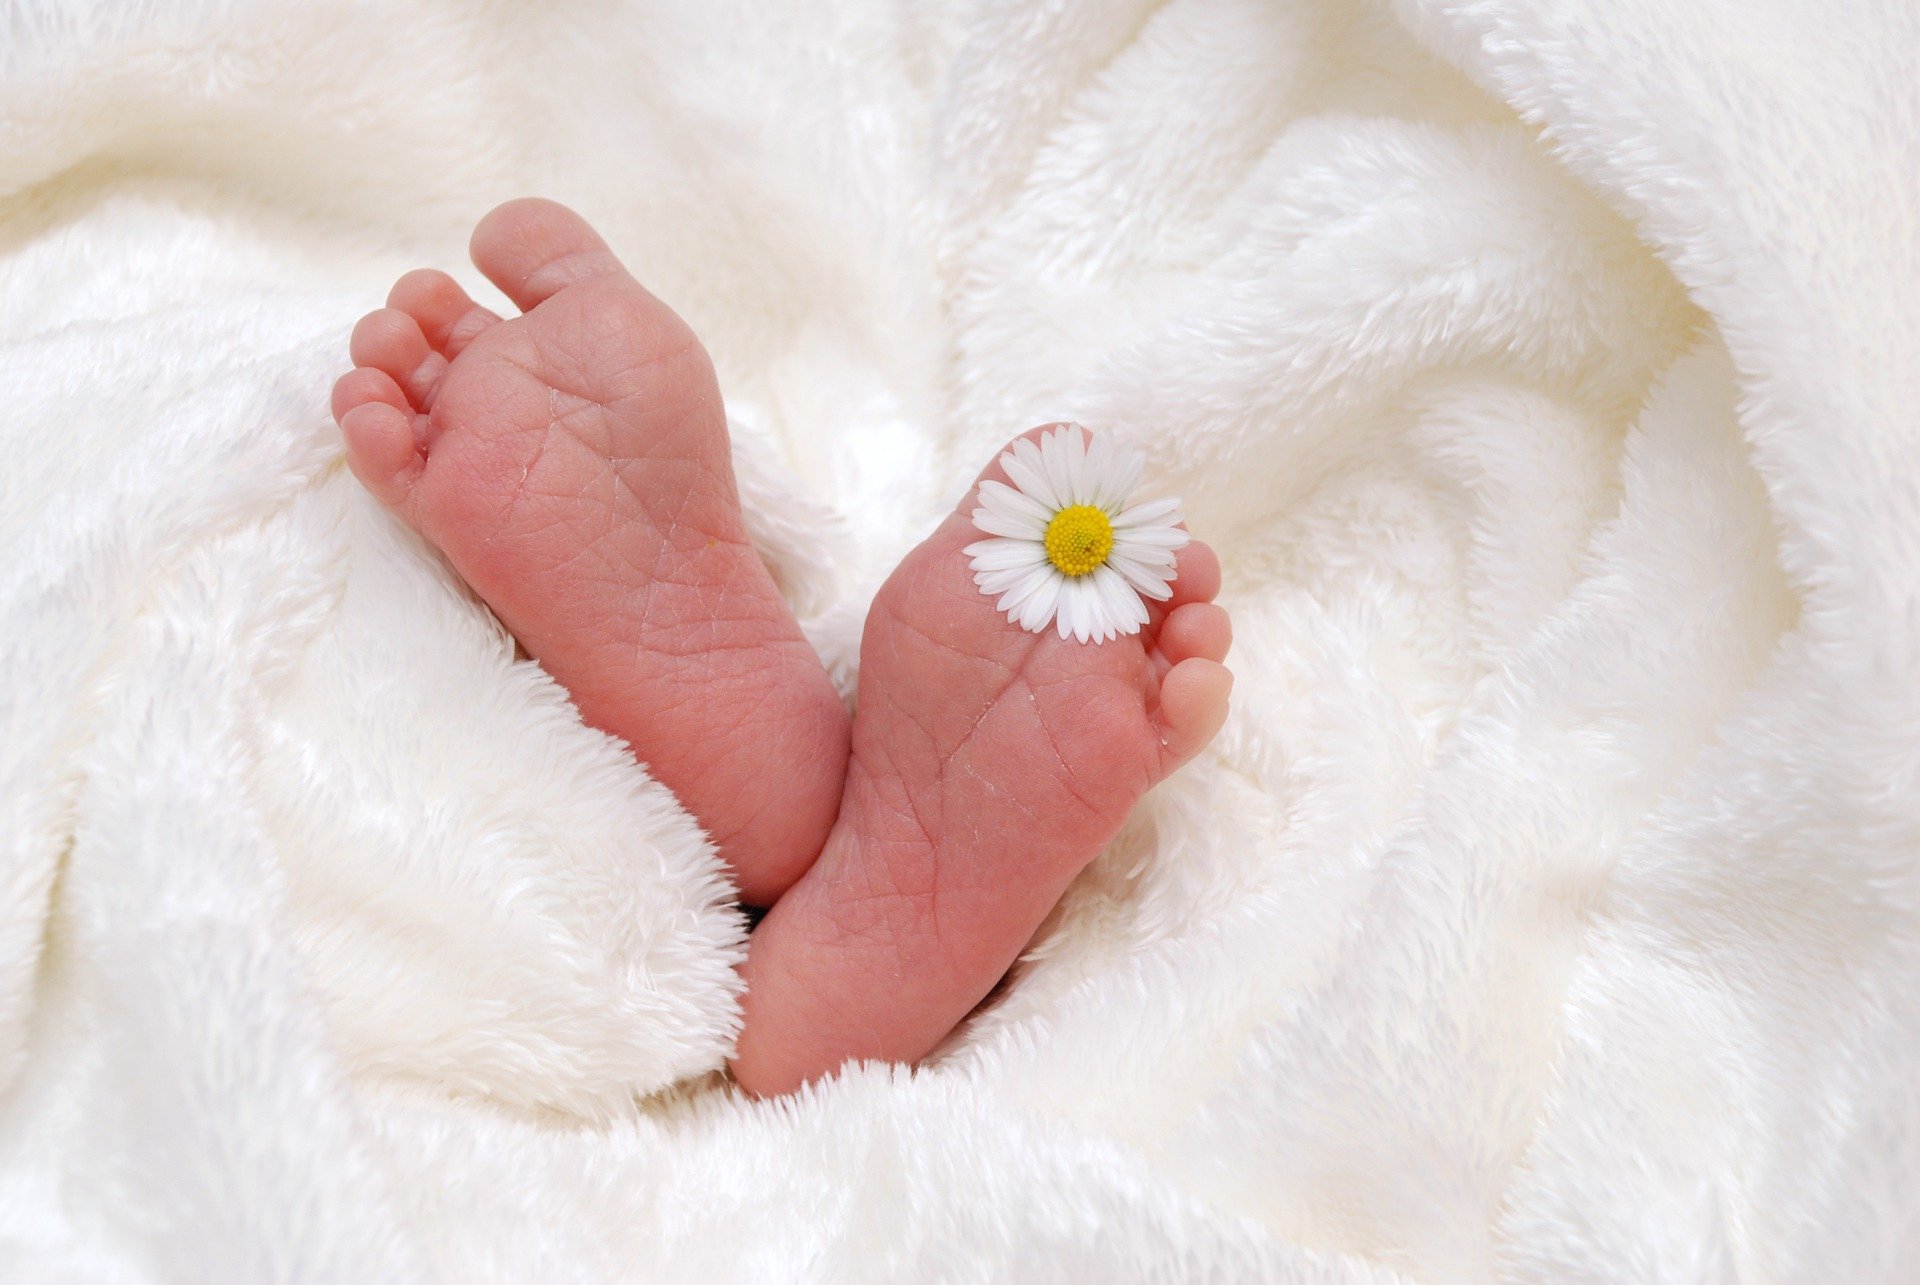 kuvassa vauvan jalkapohjat vierekkäin, päivänkakkara varpaiden välissä